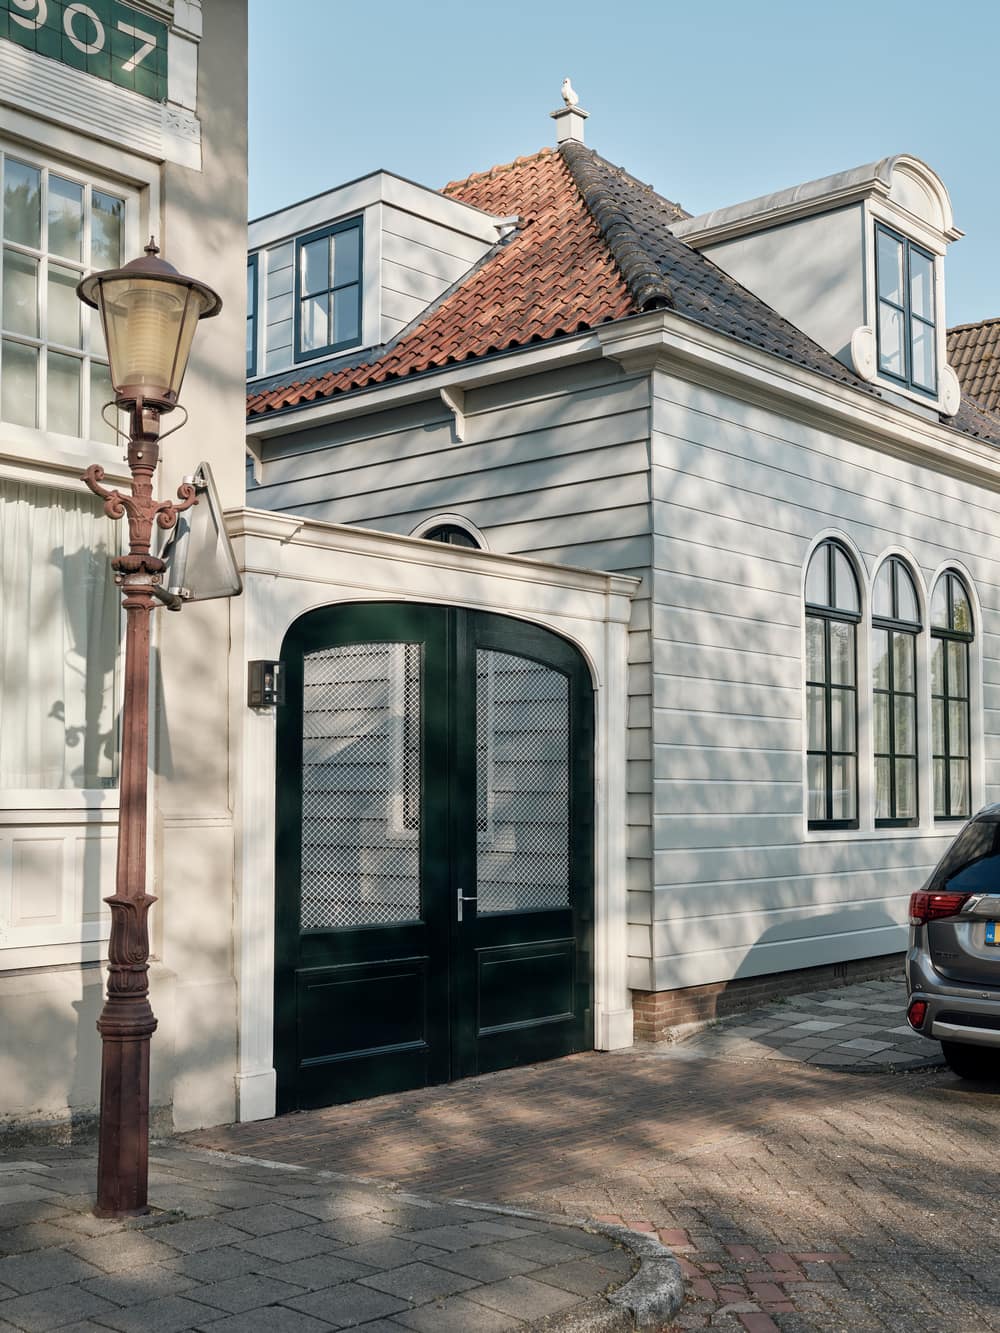 Home Dijkhuis in Amsterdam by Studio Modijefsky